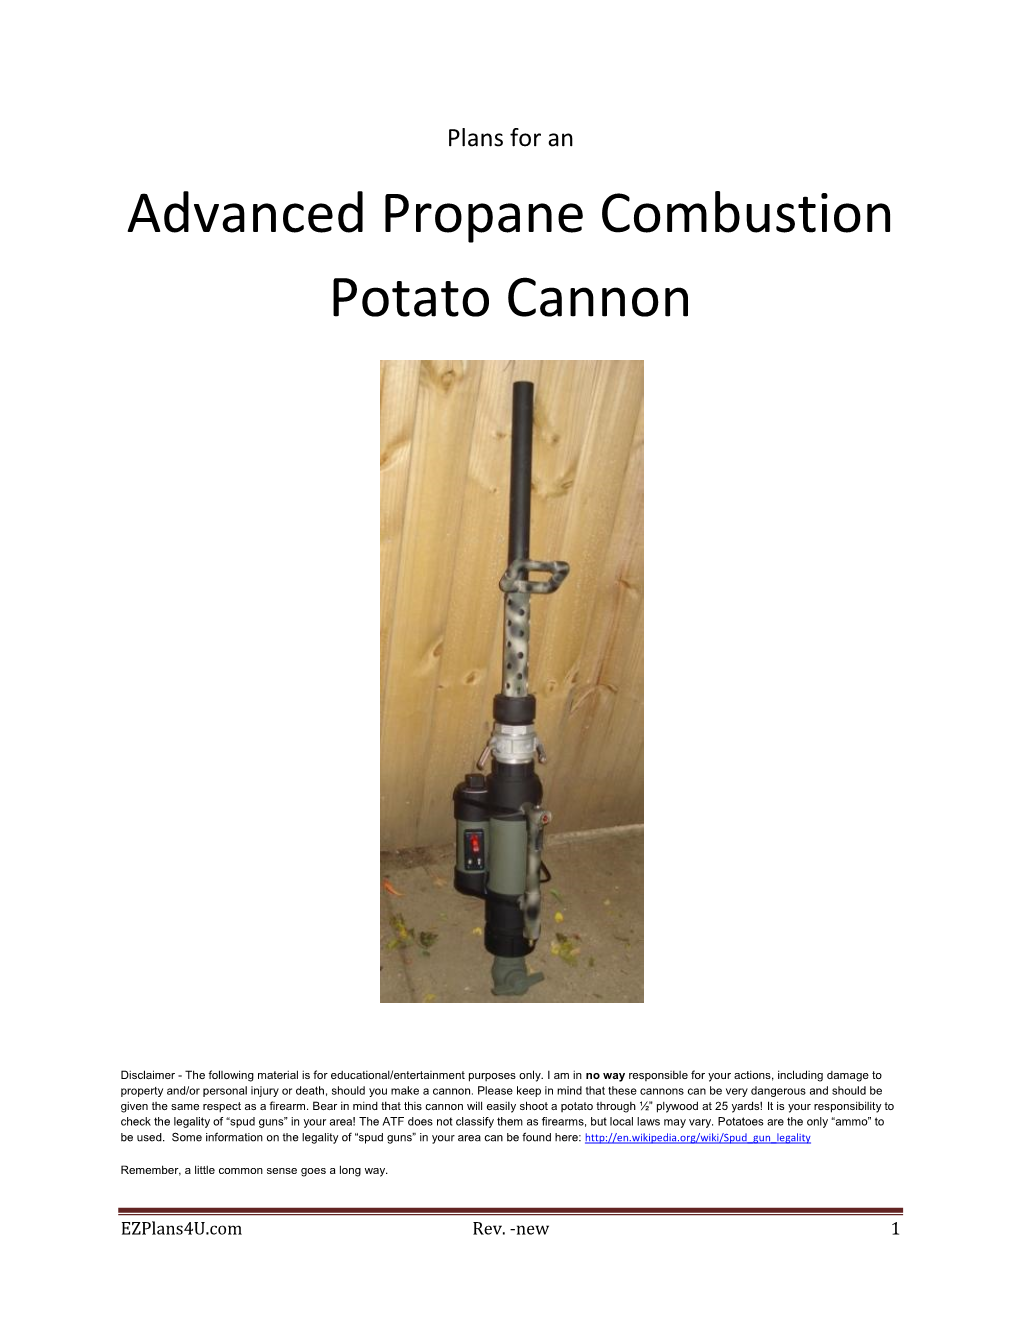 Advanced Propane Combustion Potato Cannon